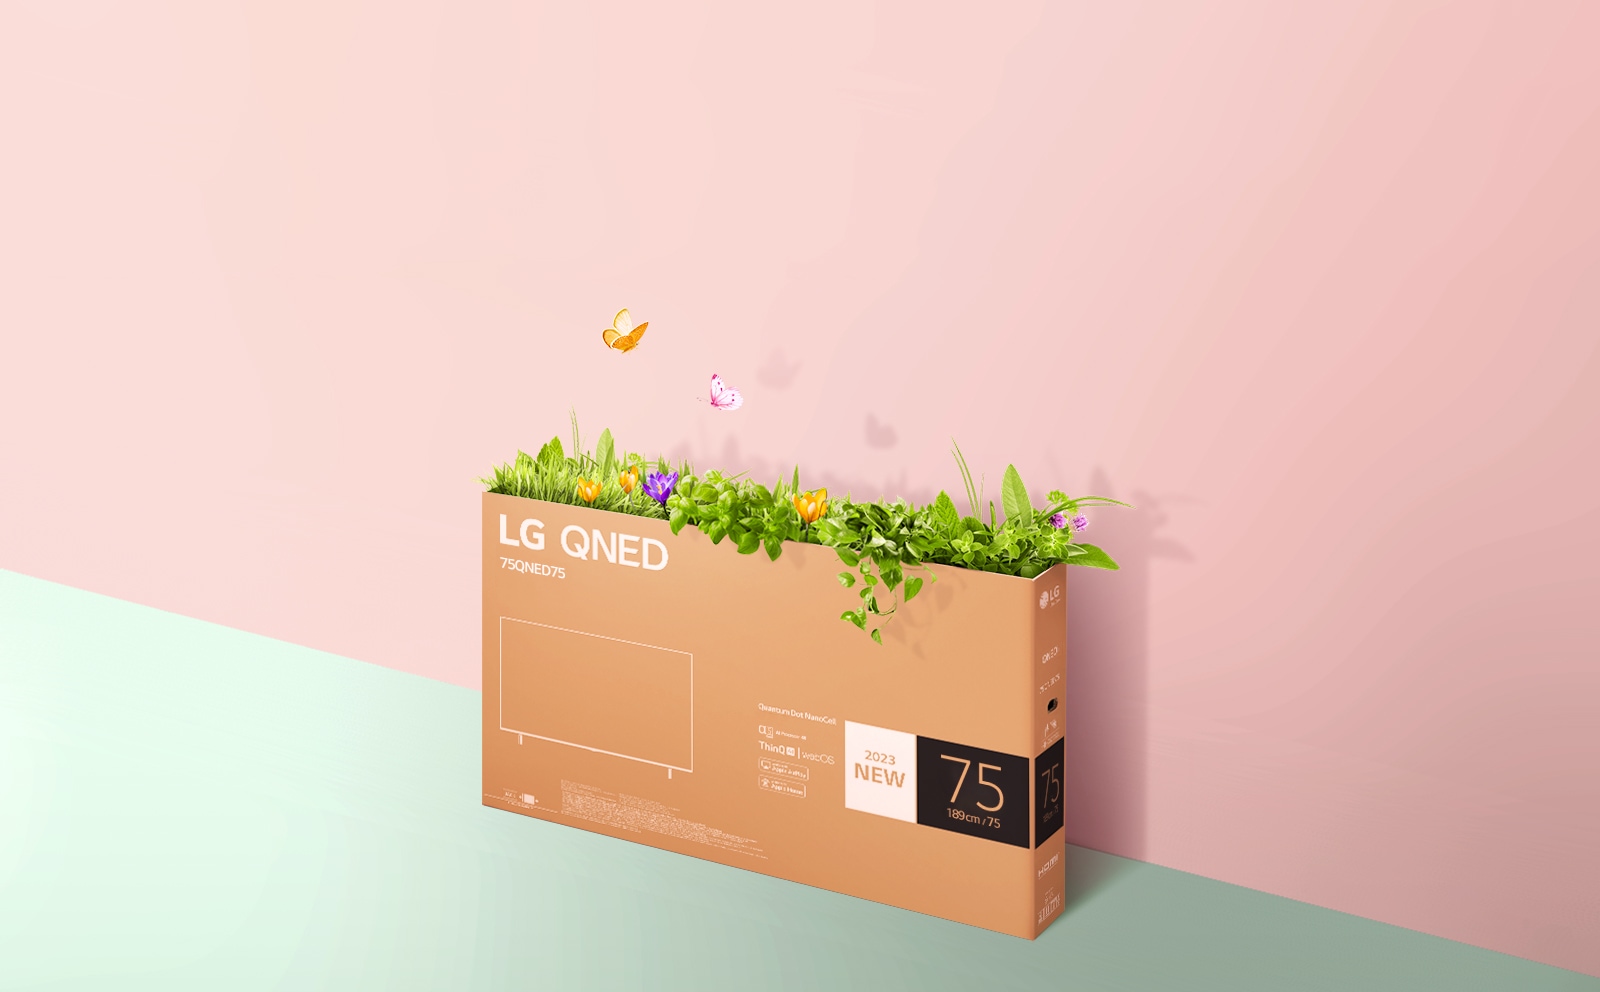 صندوق تغليف لتلفزيون QNED يظهر على خلفية وردية وخضراء، ويوجد نباتات خضراء وفراشات تخرج من داخل الصندوق. 